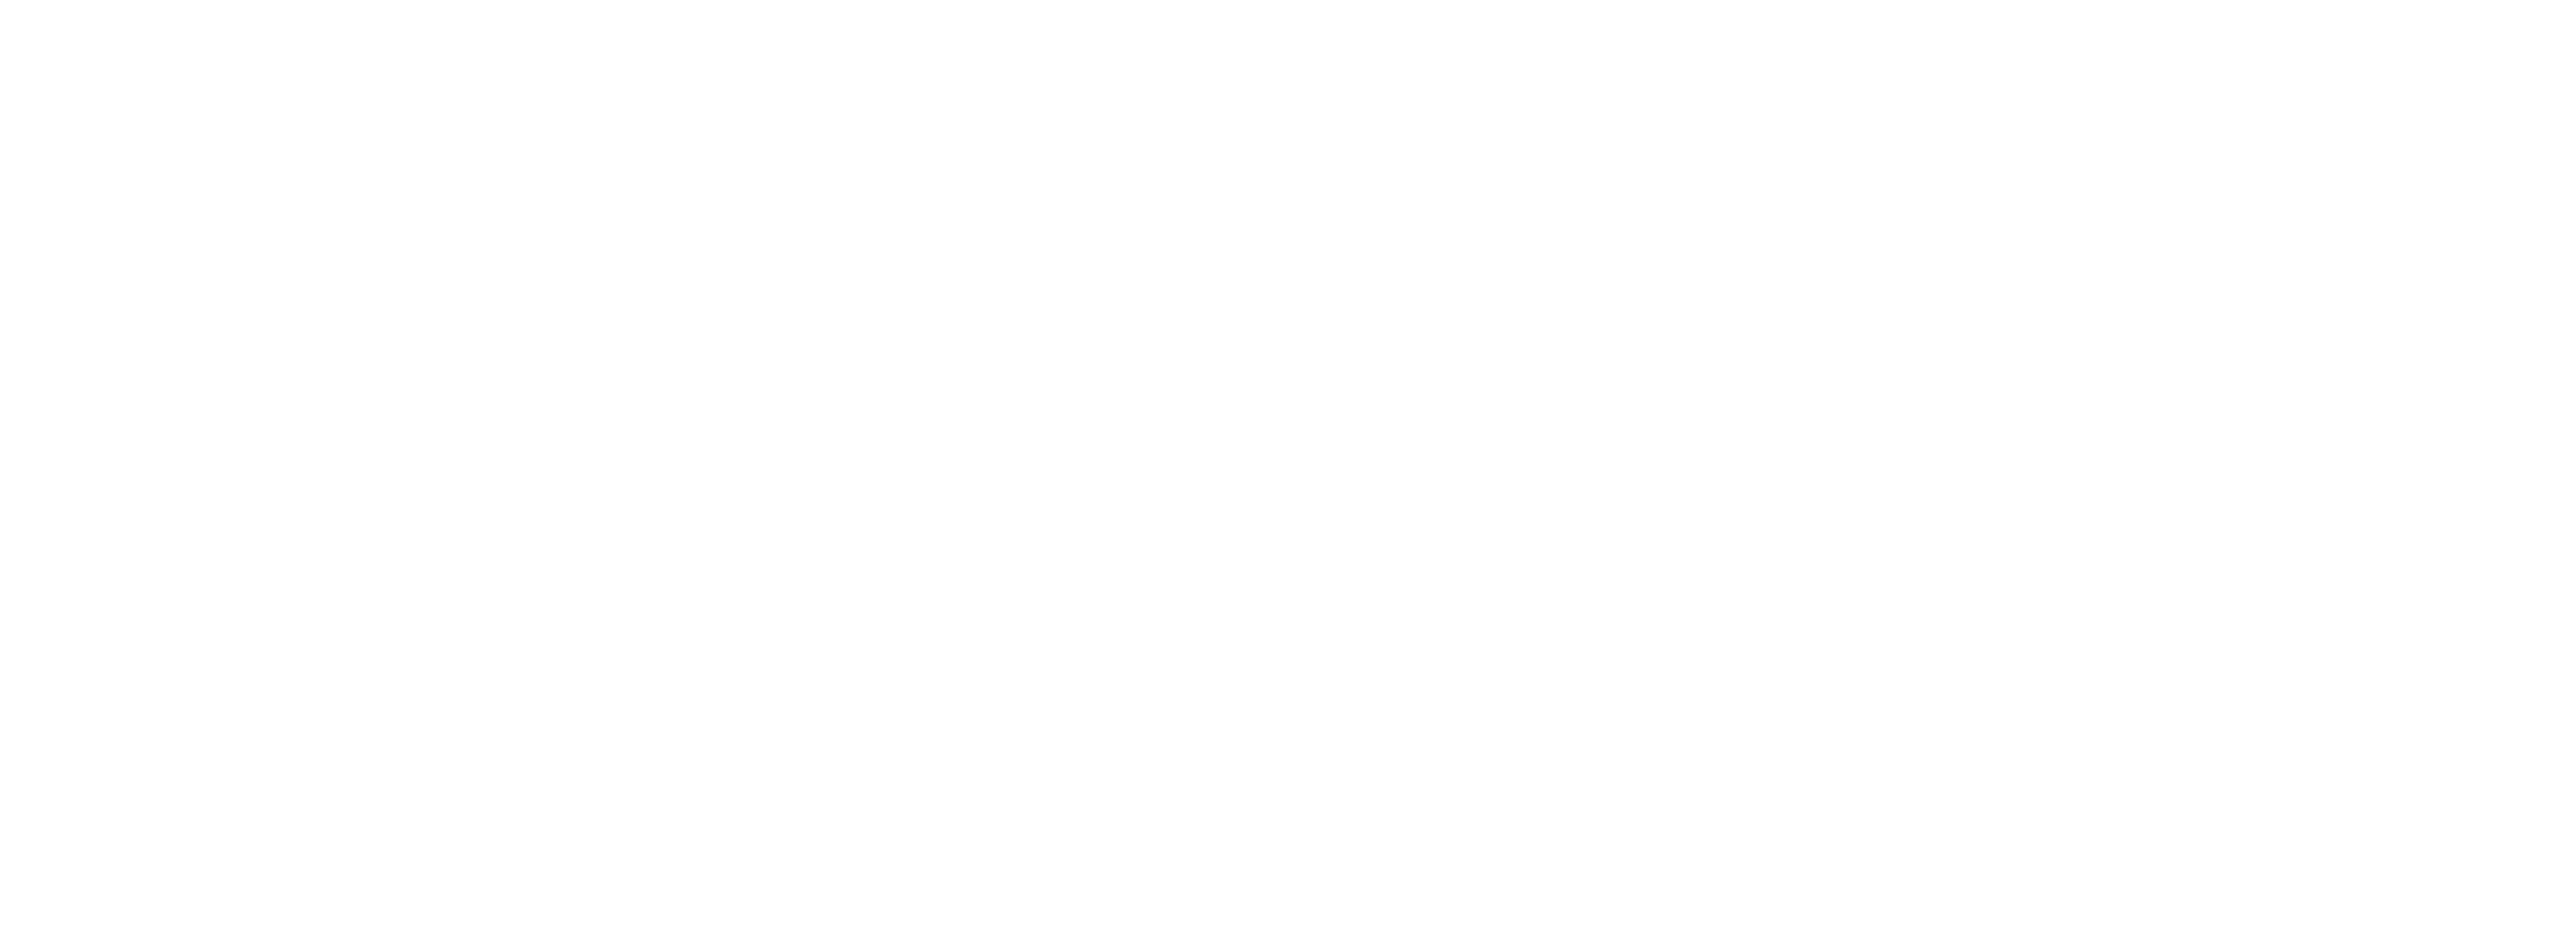 Men’s Beautyメンズビューティー無料掲載キャンペーン中！